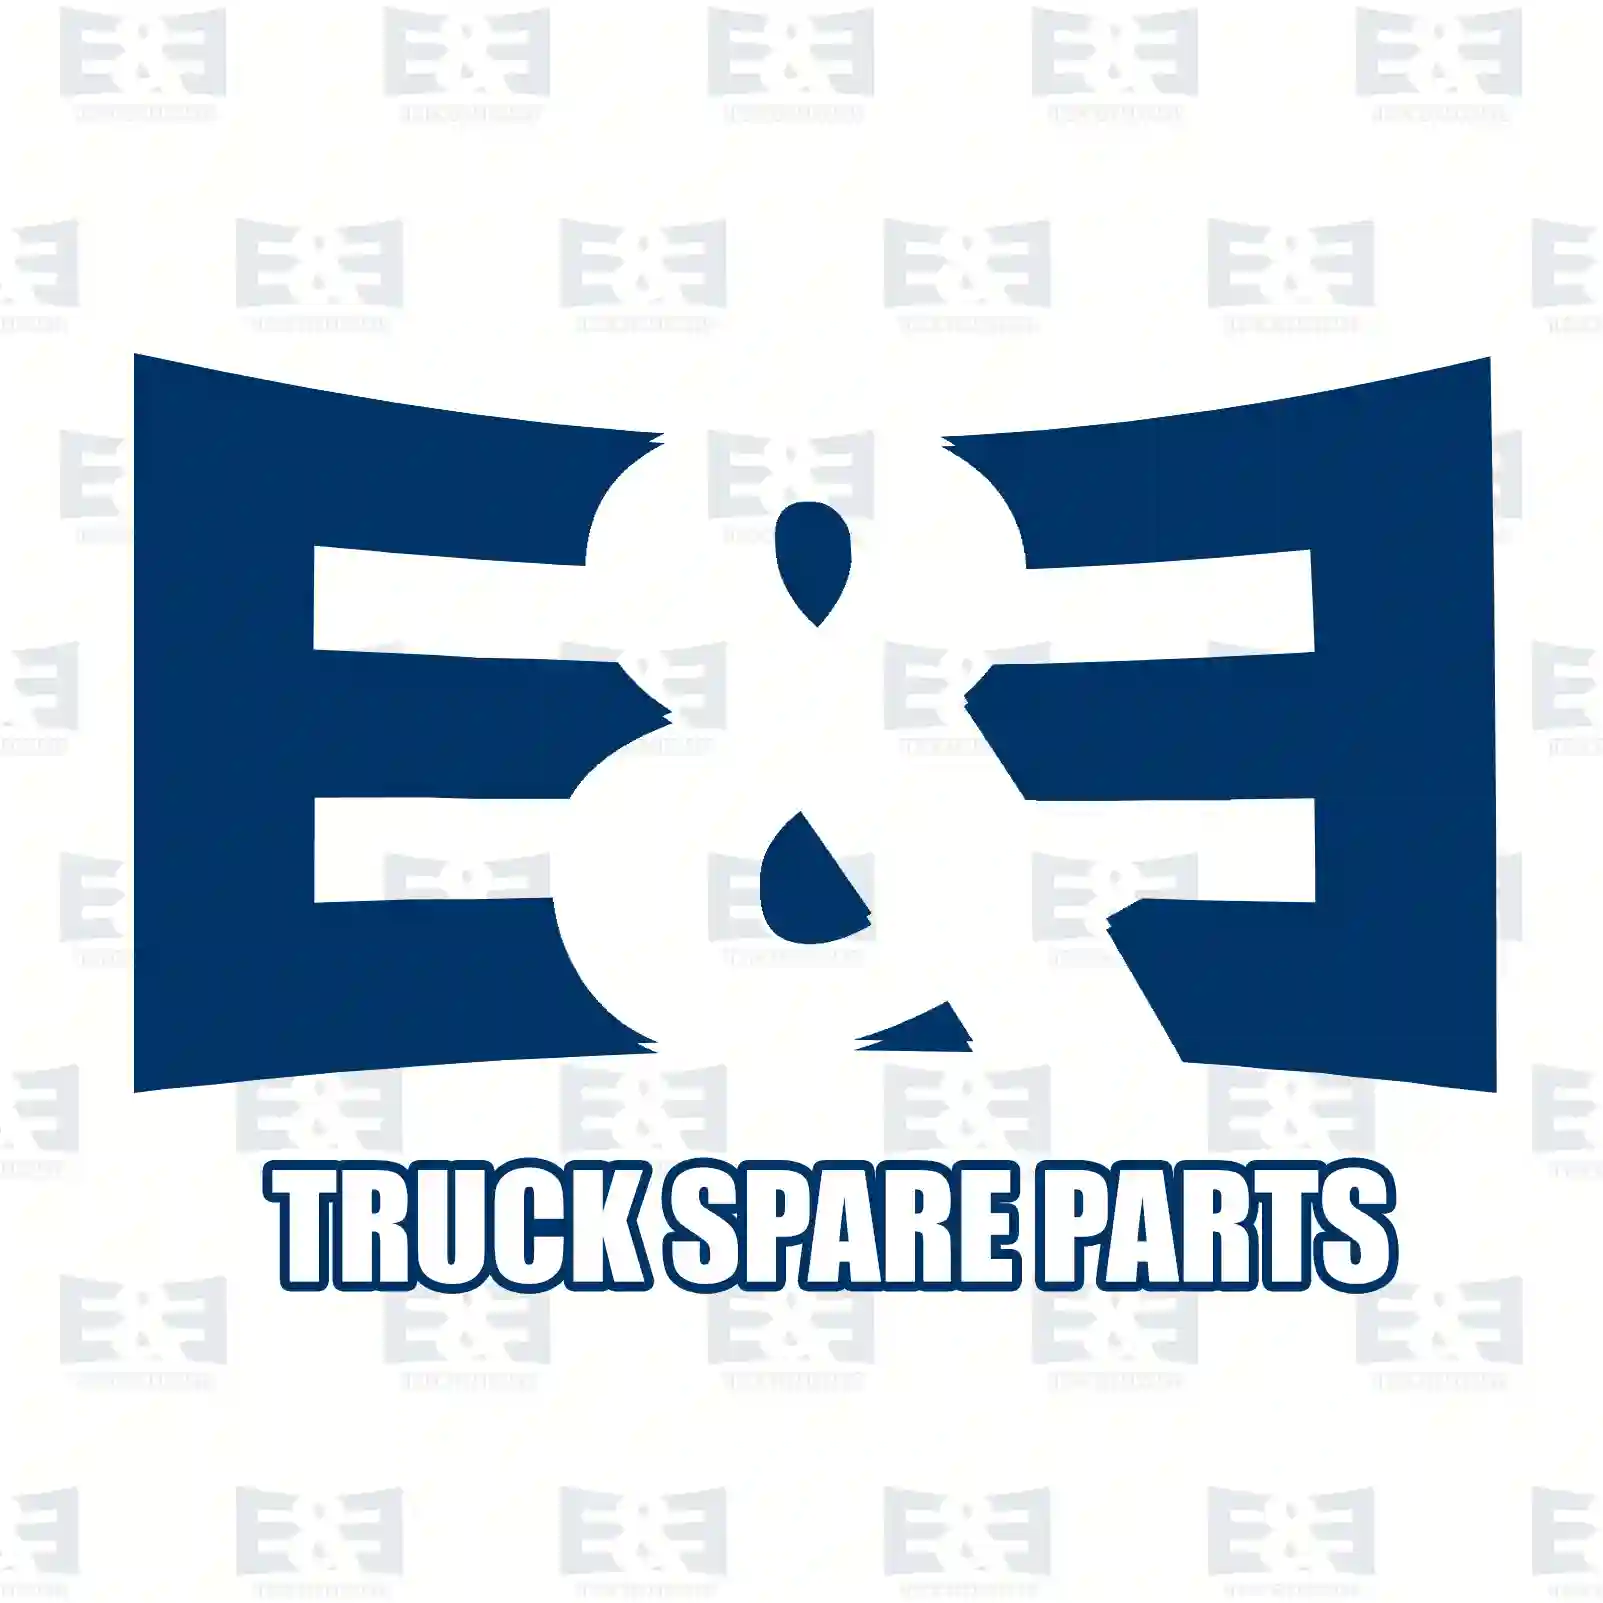 Propeller shaft, 2E2276749, 41218072 ||  2E2276749 E&E Truck Spare Parts | Truck Spare Parts, Auotomotive Spare Parts Propeller shaft, 2E2276749, 41218072 ||  2E2276749 E&E Truck Spare Parts | Truck Spare Parts, Auotomotive Spare Parts